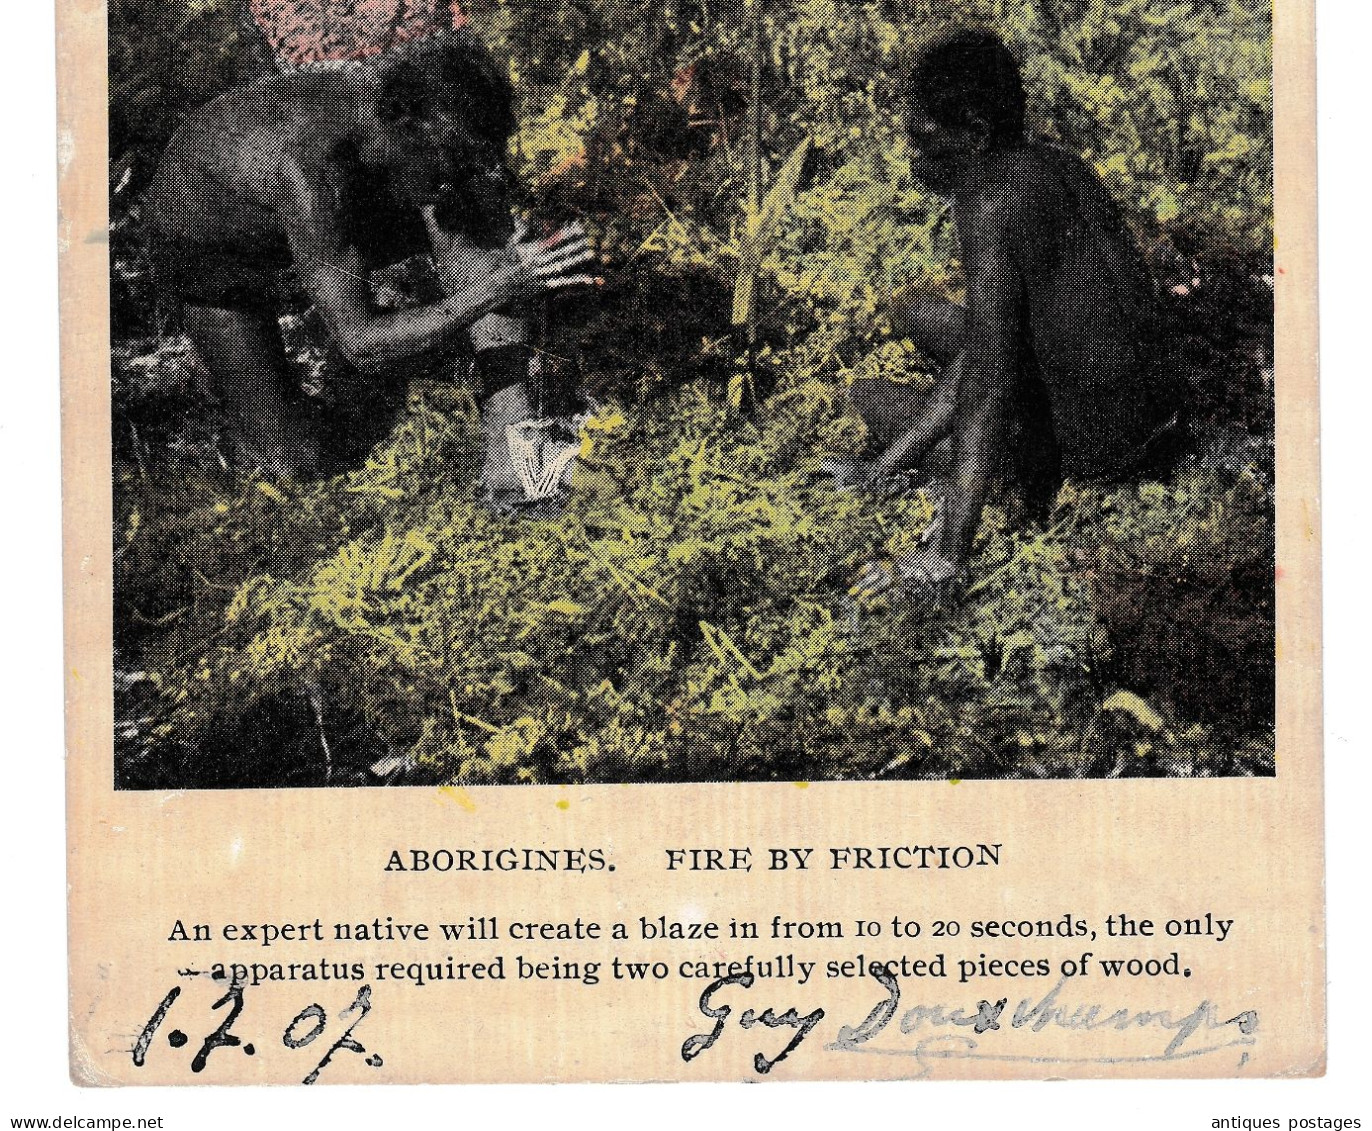 Postcard 1907 Melbourne Australia Liège Belgique Guy Douchamps Aborigènes Aborigines Fire Friction Harding & Billing's